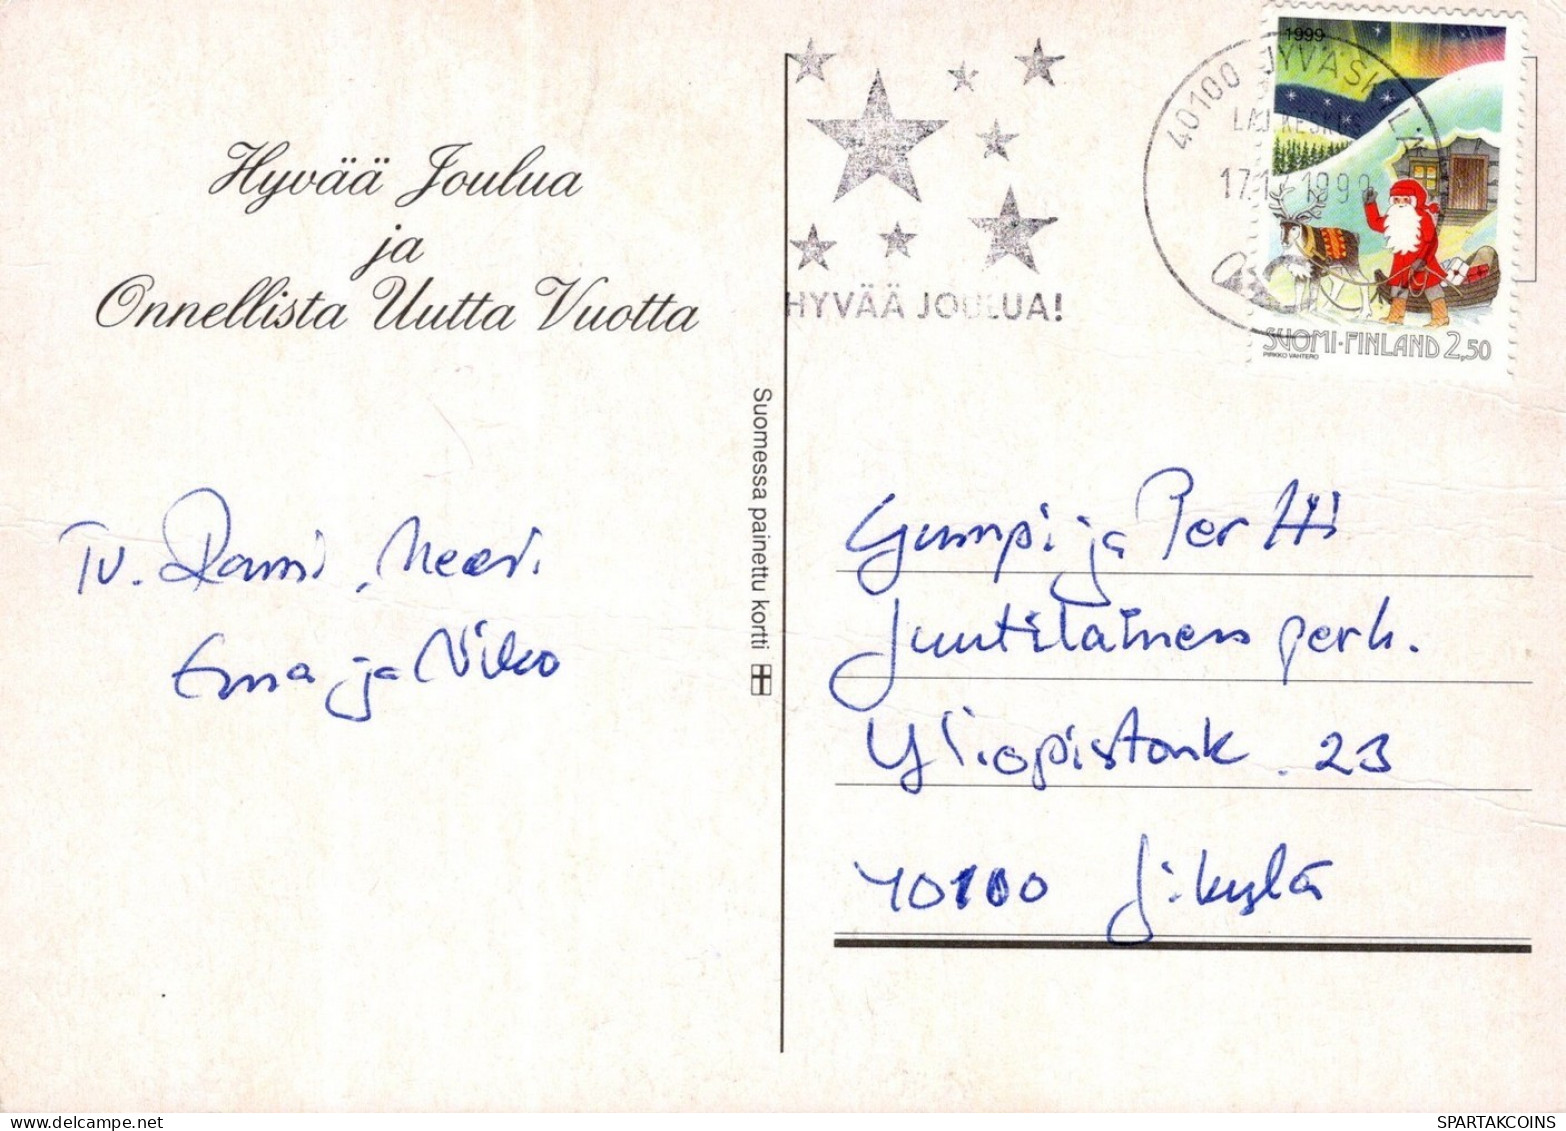 PAPÁ NOEL NAVIDAD Fiesta Vintage Tarjeta Postal CPSM #PAJ750.ES - Santa Claus